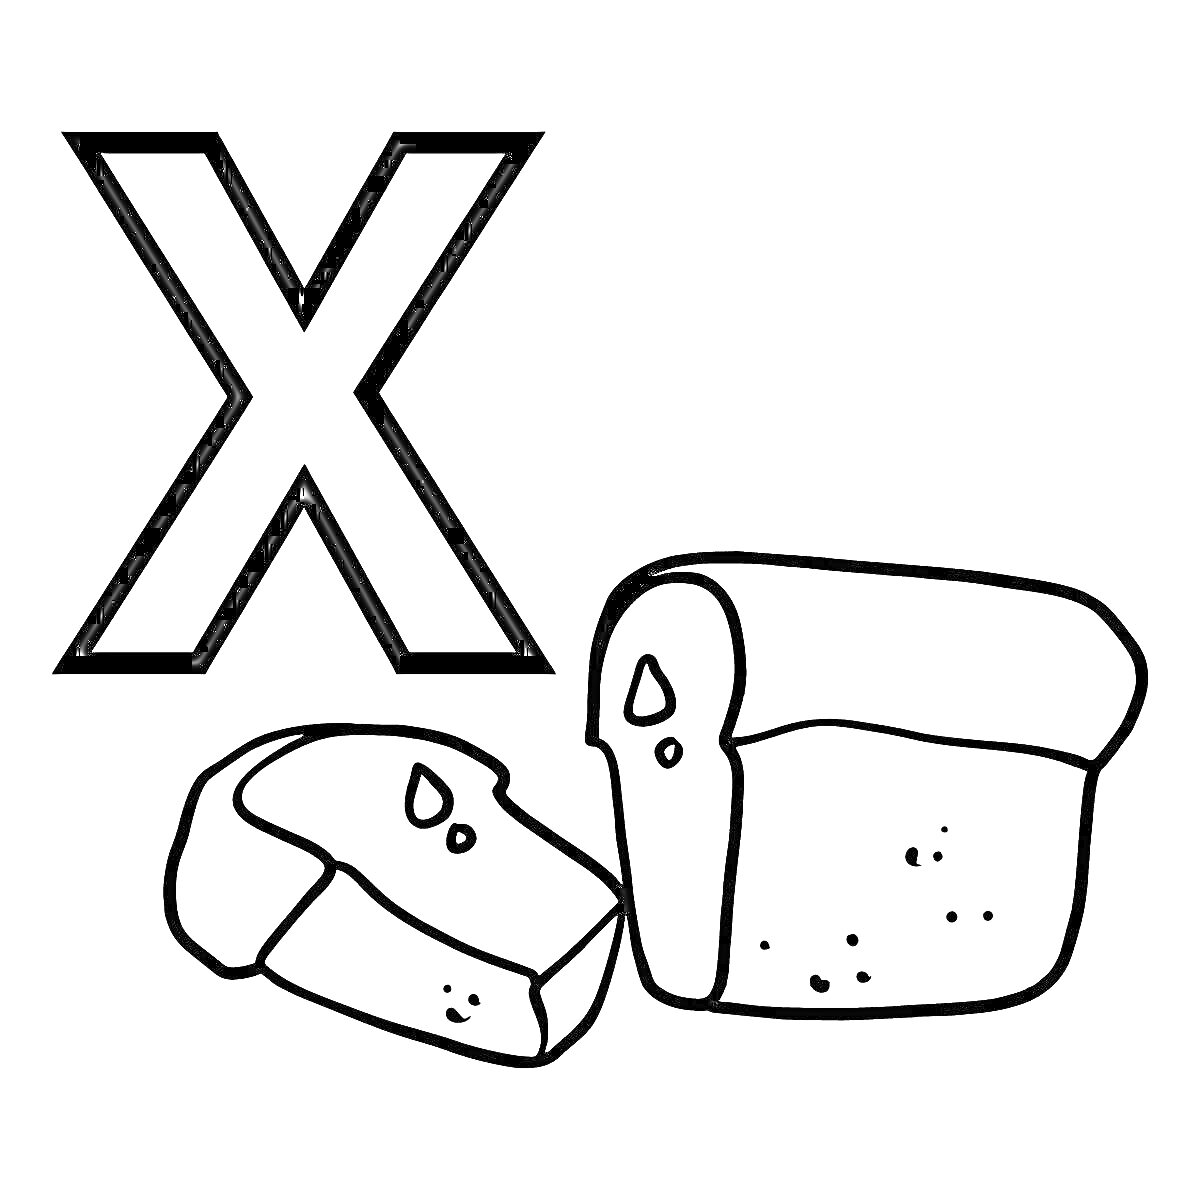 Раскраска Буква Х с изображением буханки хлеба и нарезанными кусочками